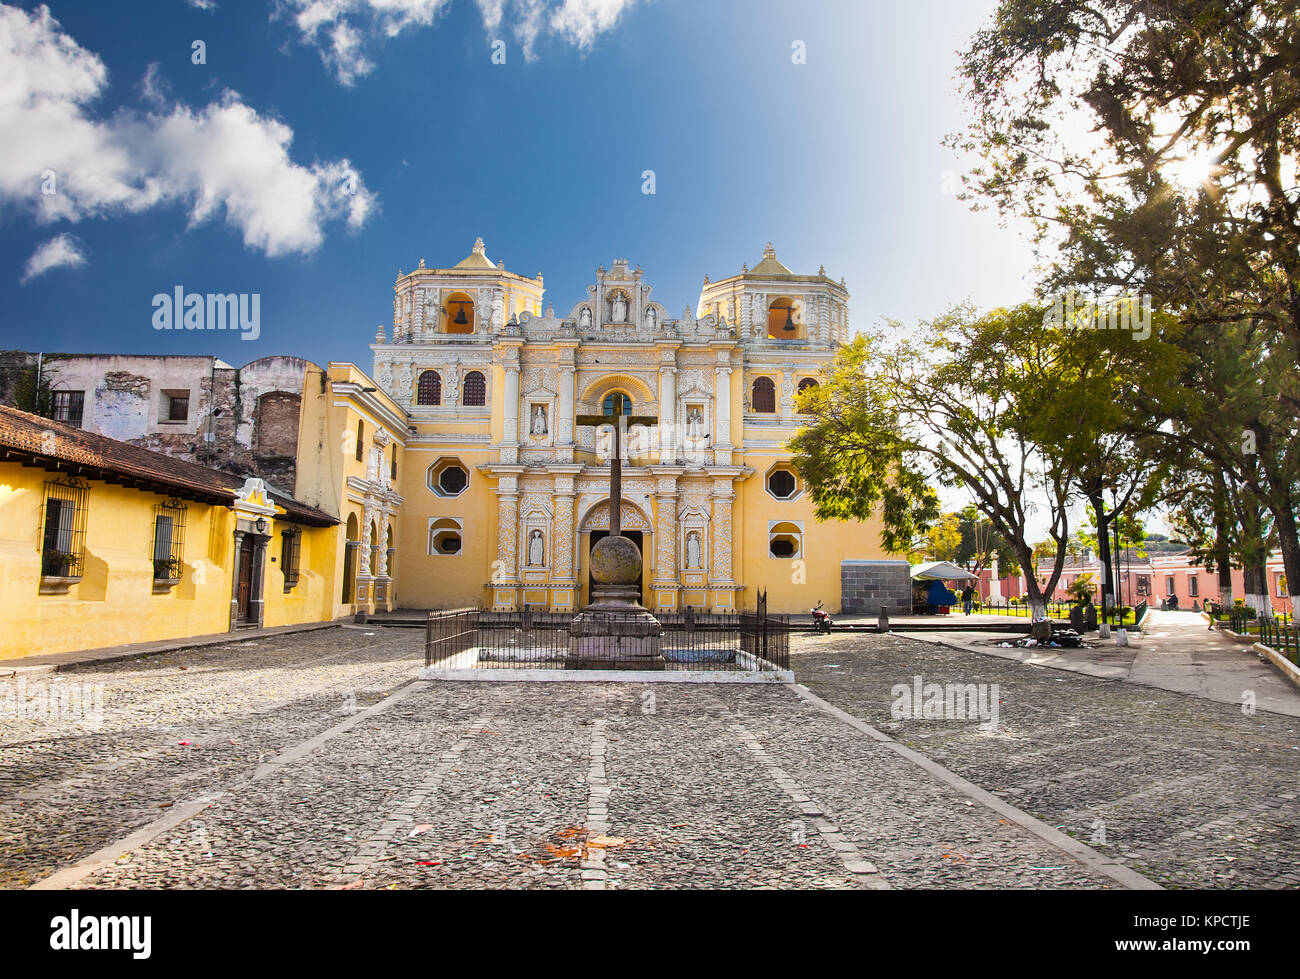 La Merced church in central park of Antigua, Guatemala Stock Photo - Alamy